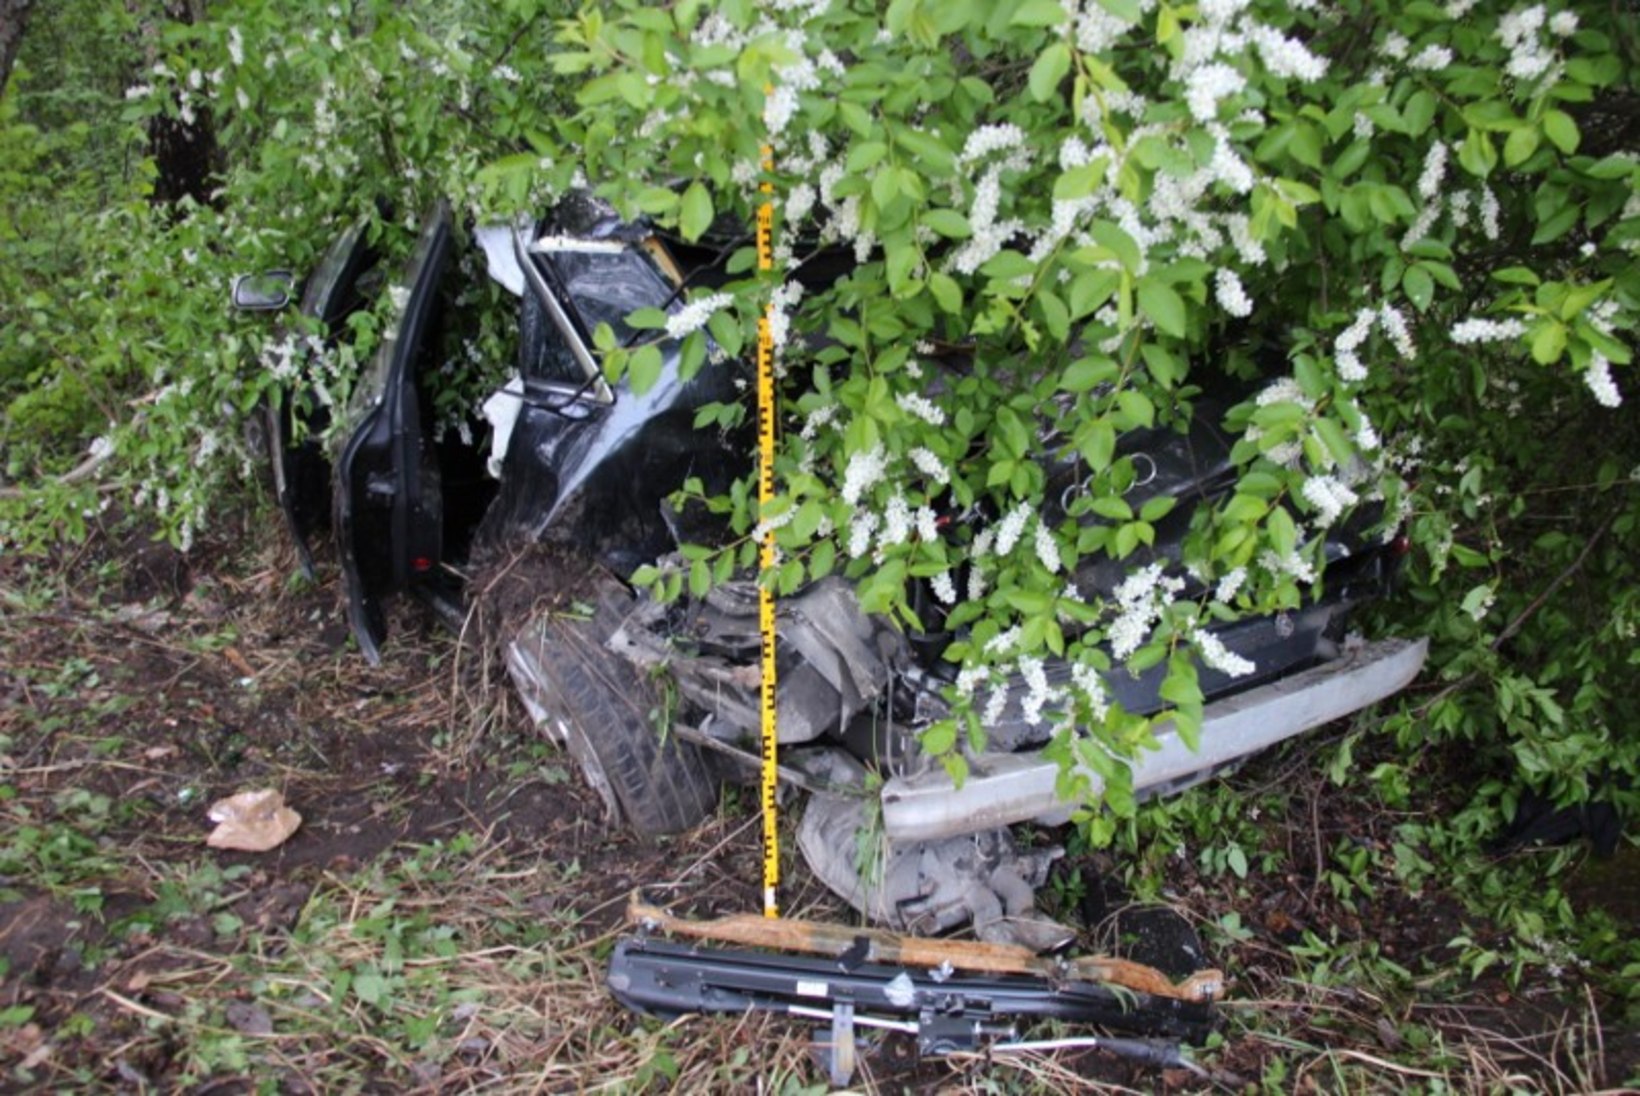 Kiltsi lennuväljal peetud autohuviliste kokkutulekul hukkus liiklusõnnetuses 22aastane mees